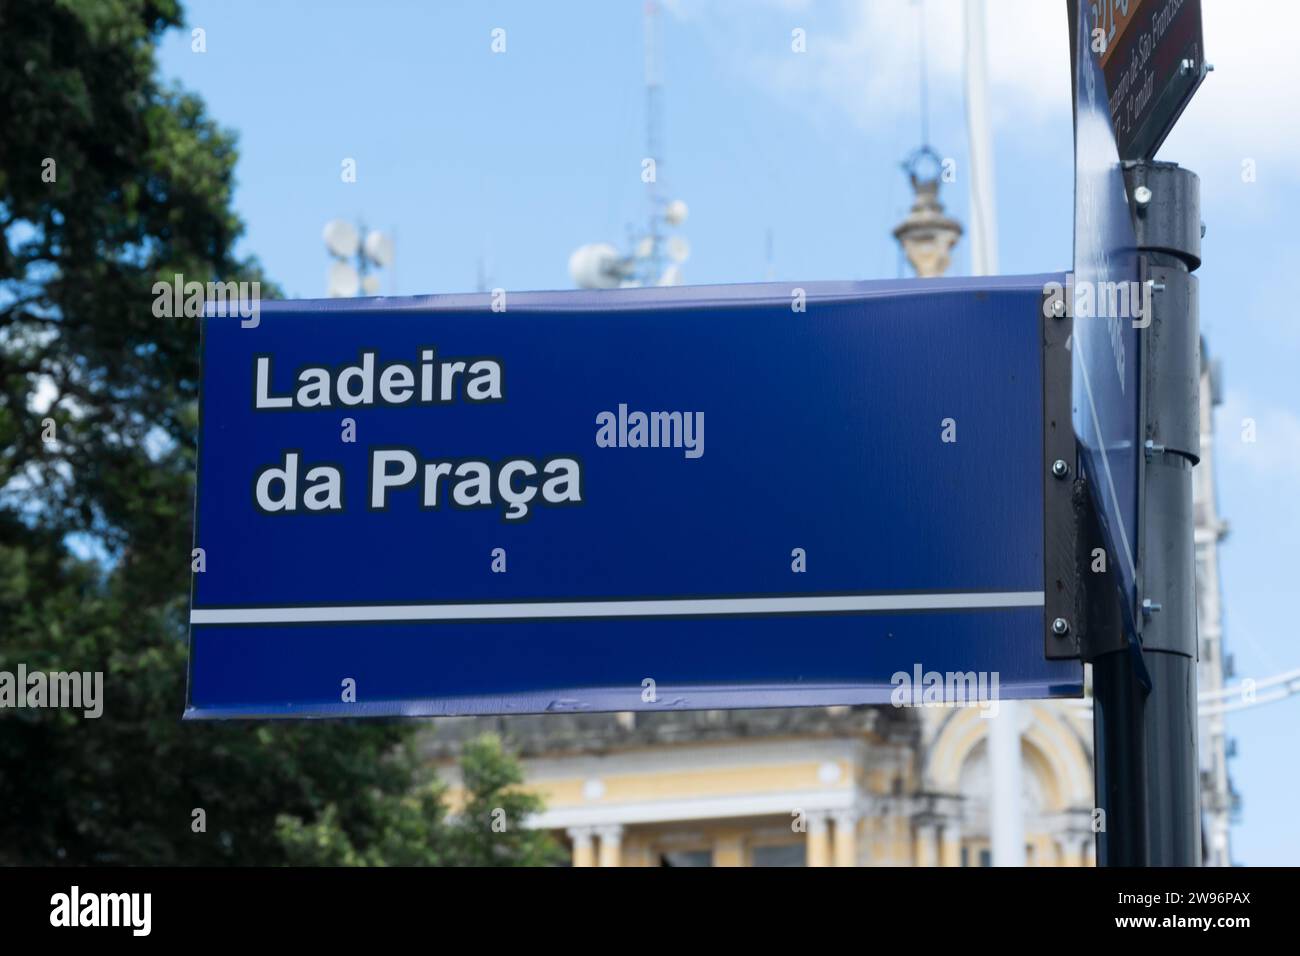 Salvador, Bahia, Brasile - 7 febbraio 2015: Segnale stradale che indica la Ladeira da Praga nella città di Salvador, Bahia. Foto Stock